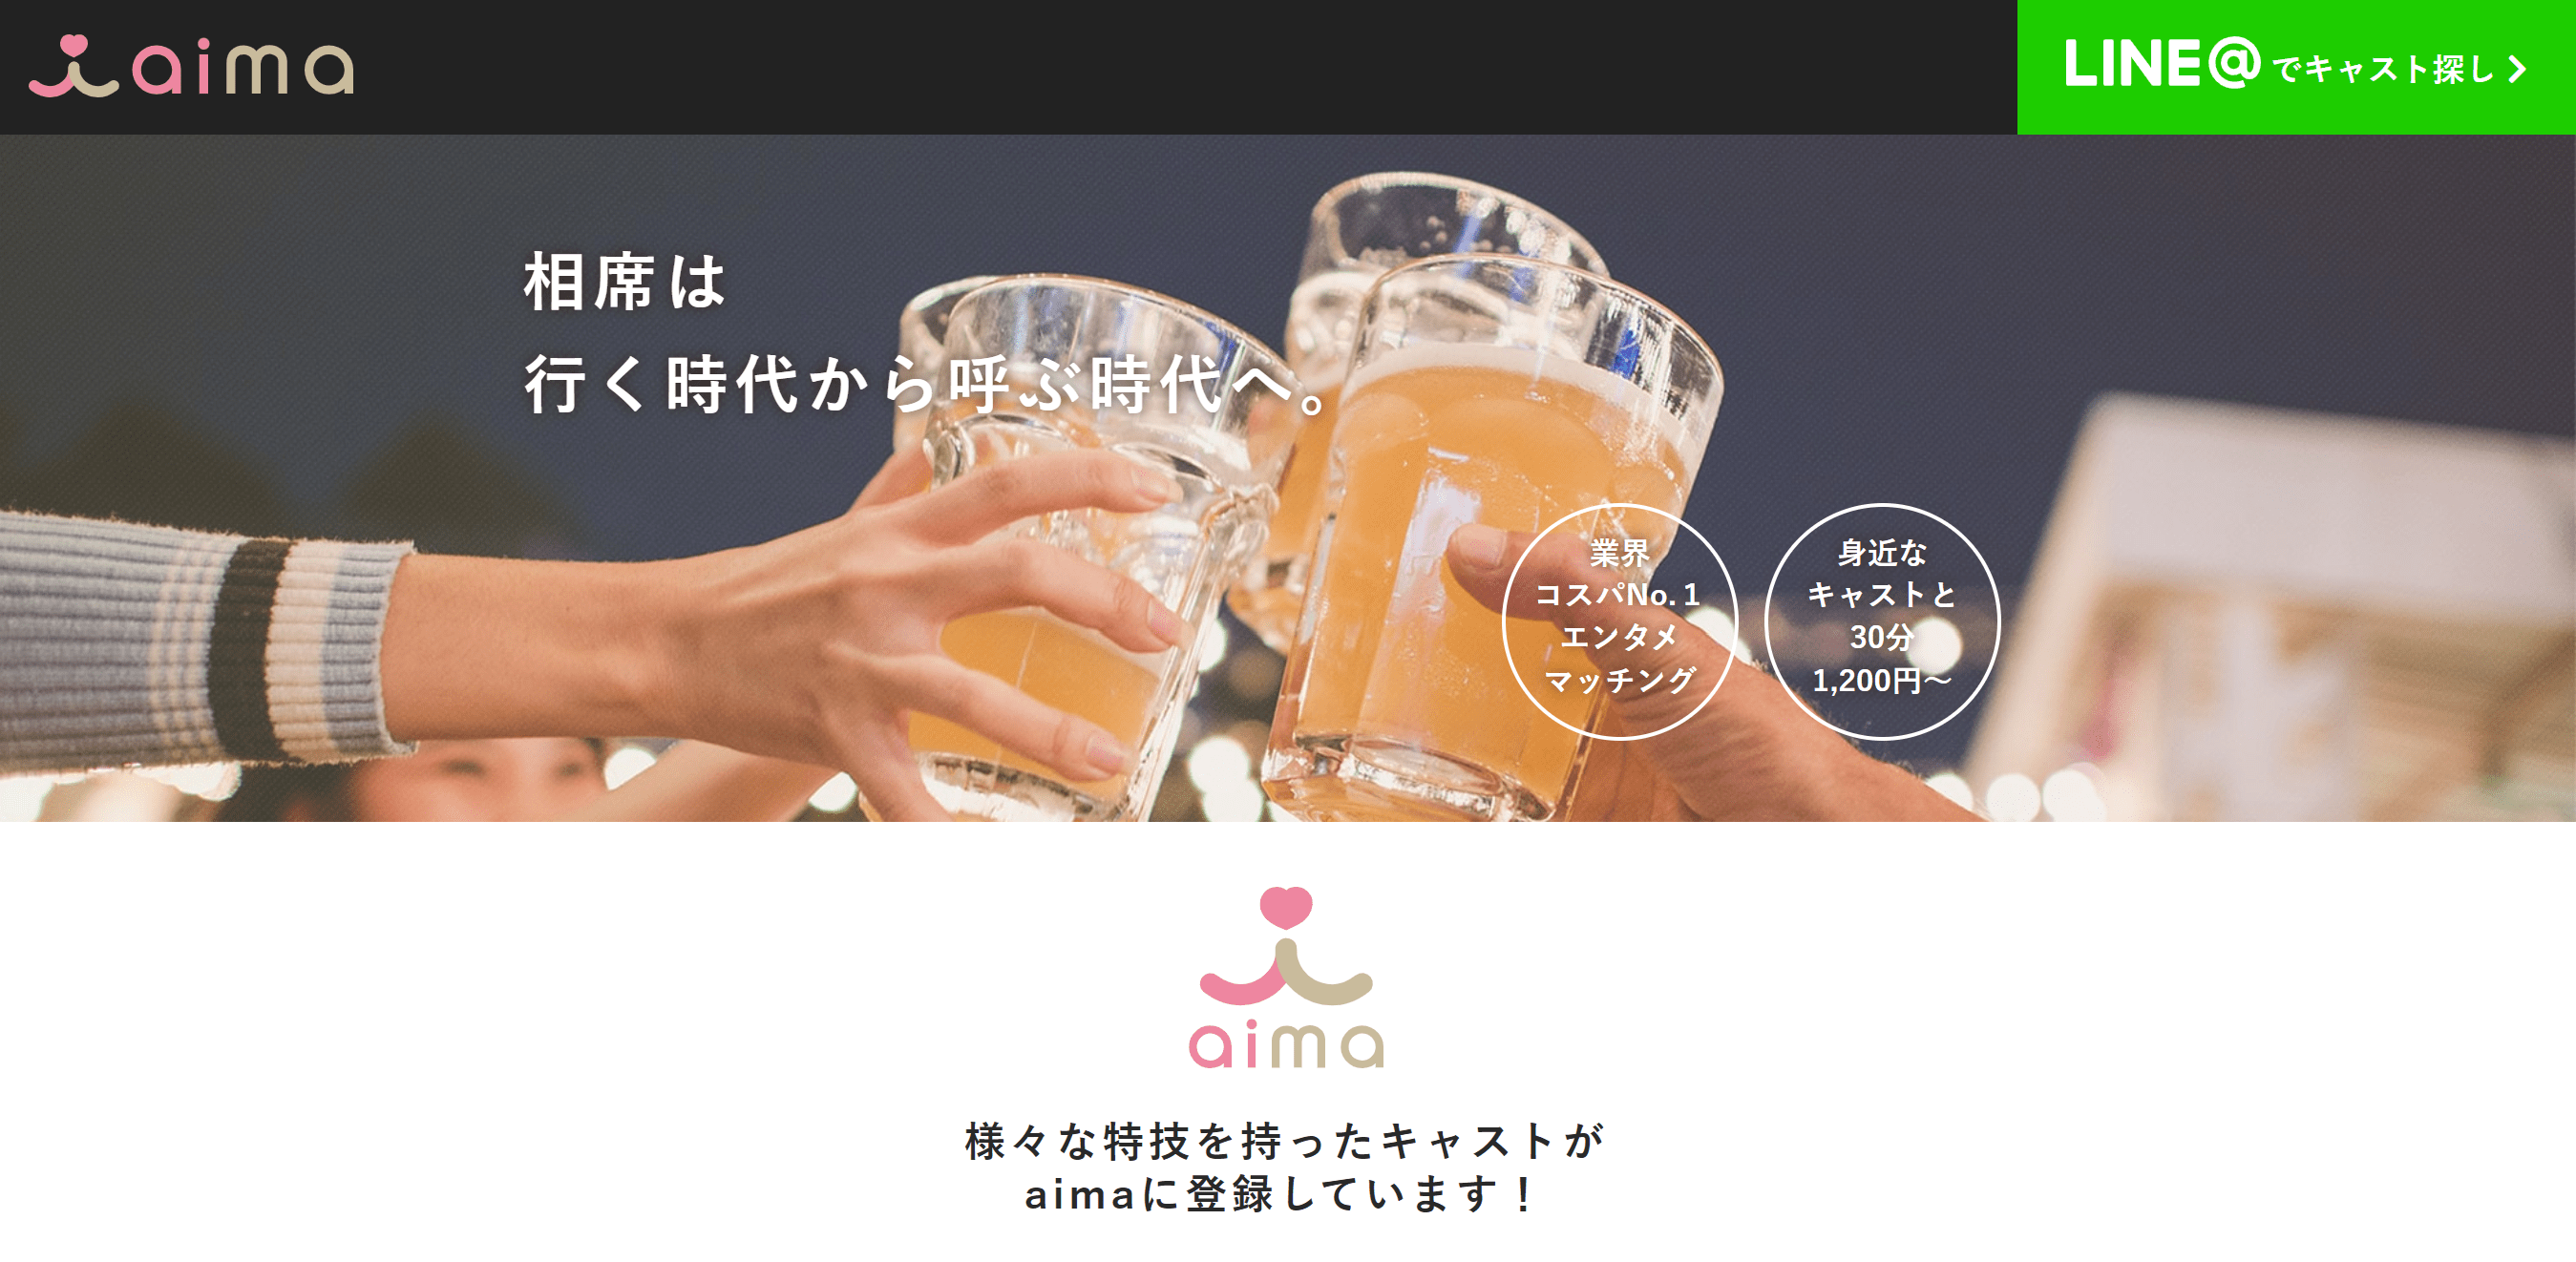 2.すぐに飲み会がセッティングできる「aima」